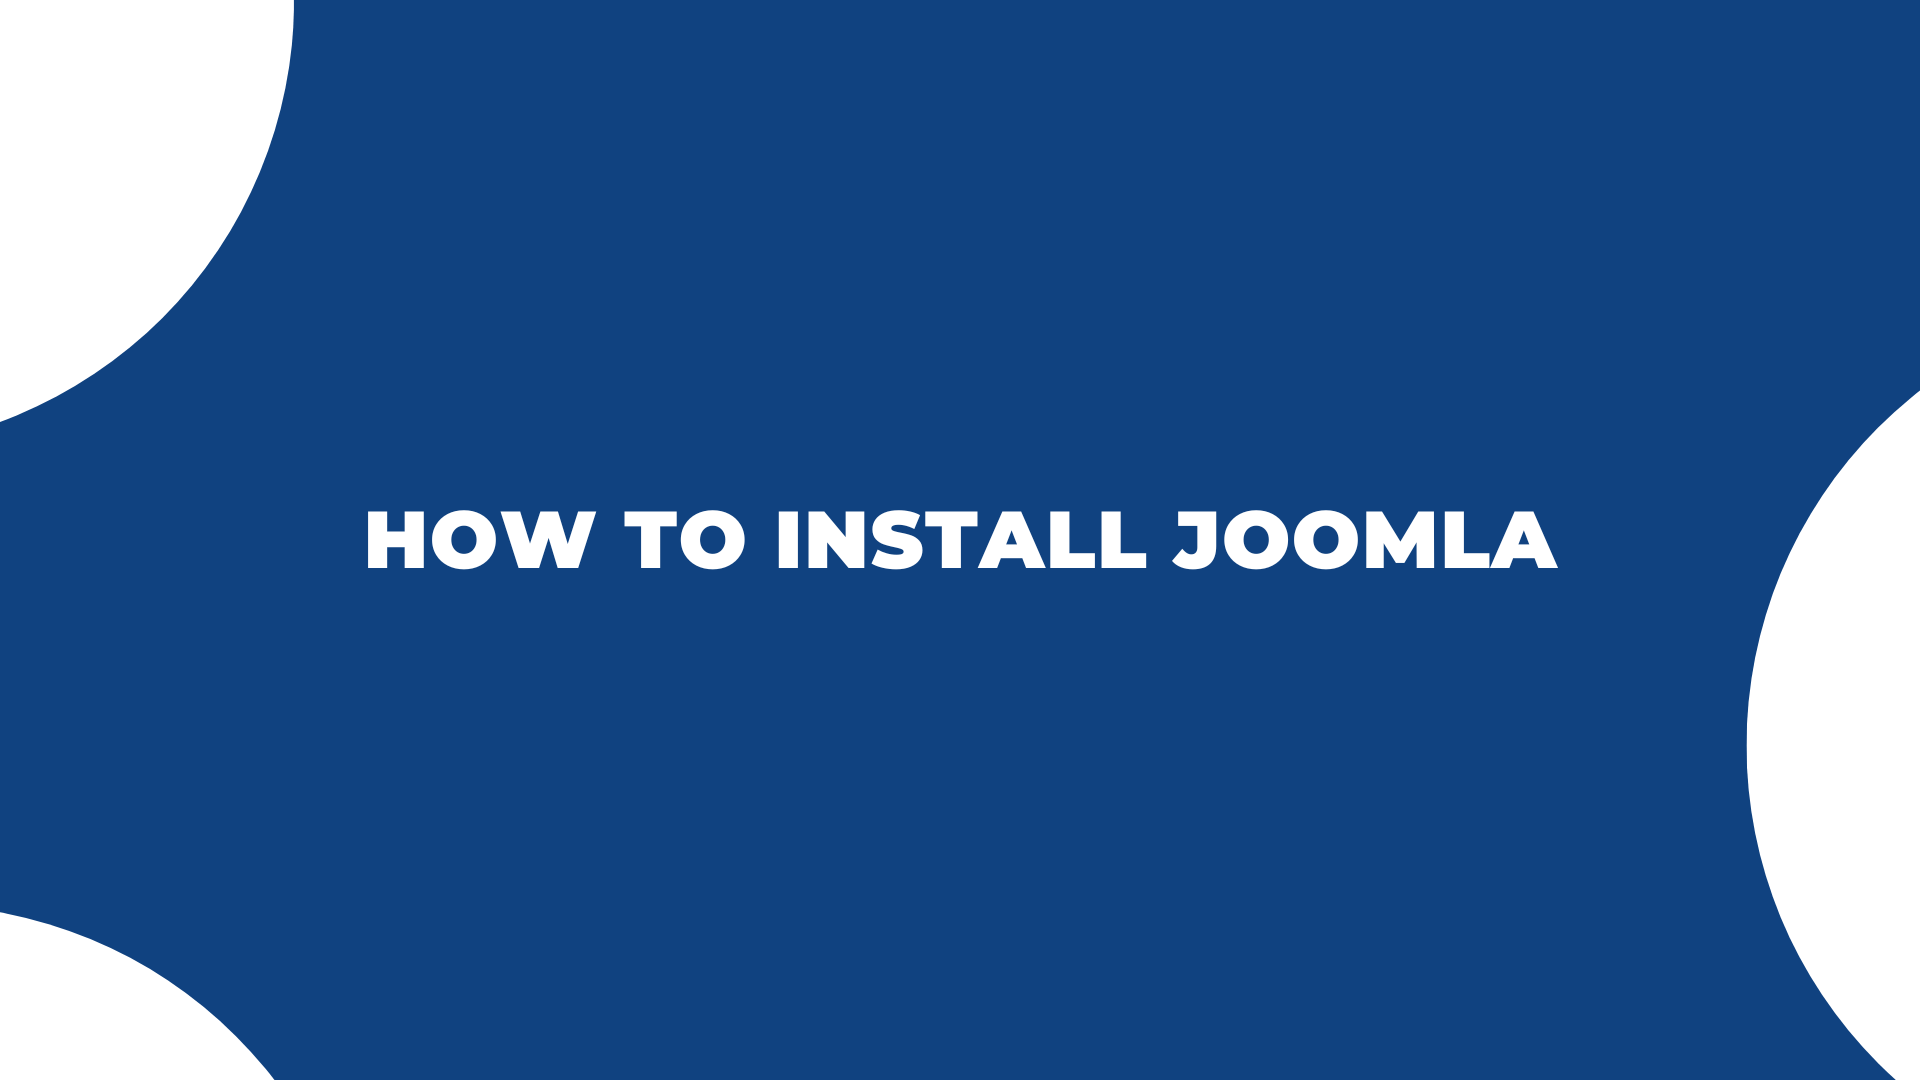 Joomla News: How To Install Joomla